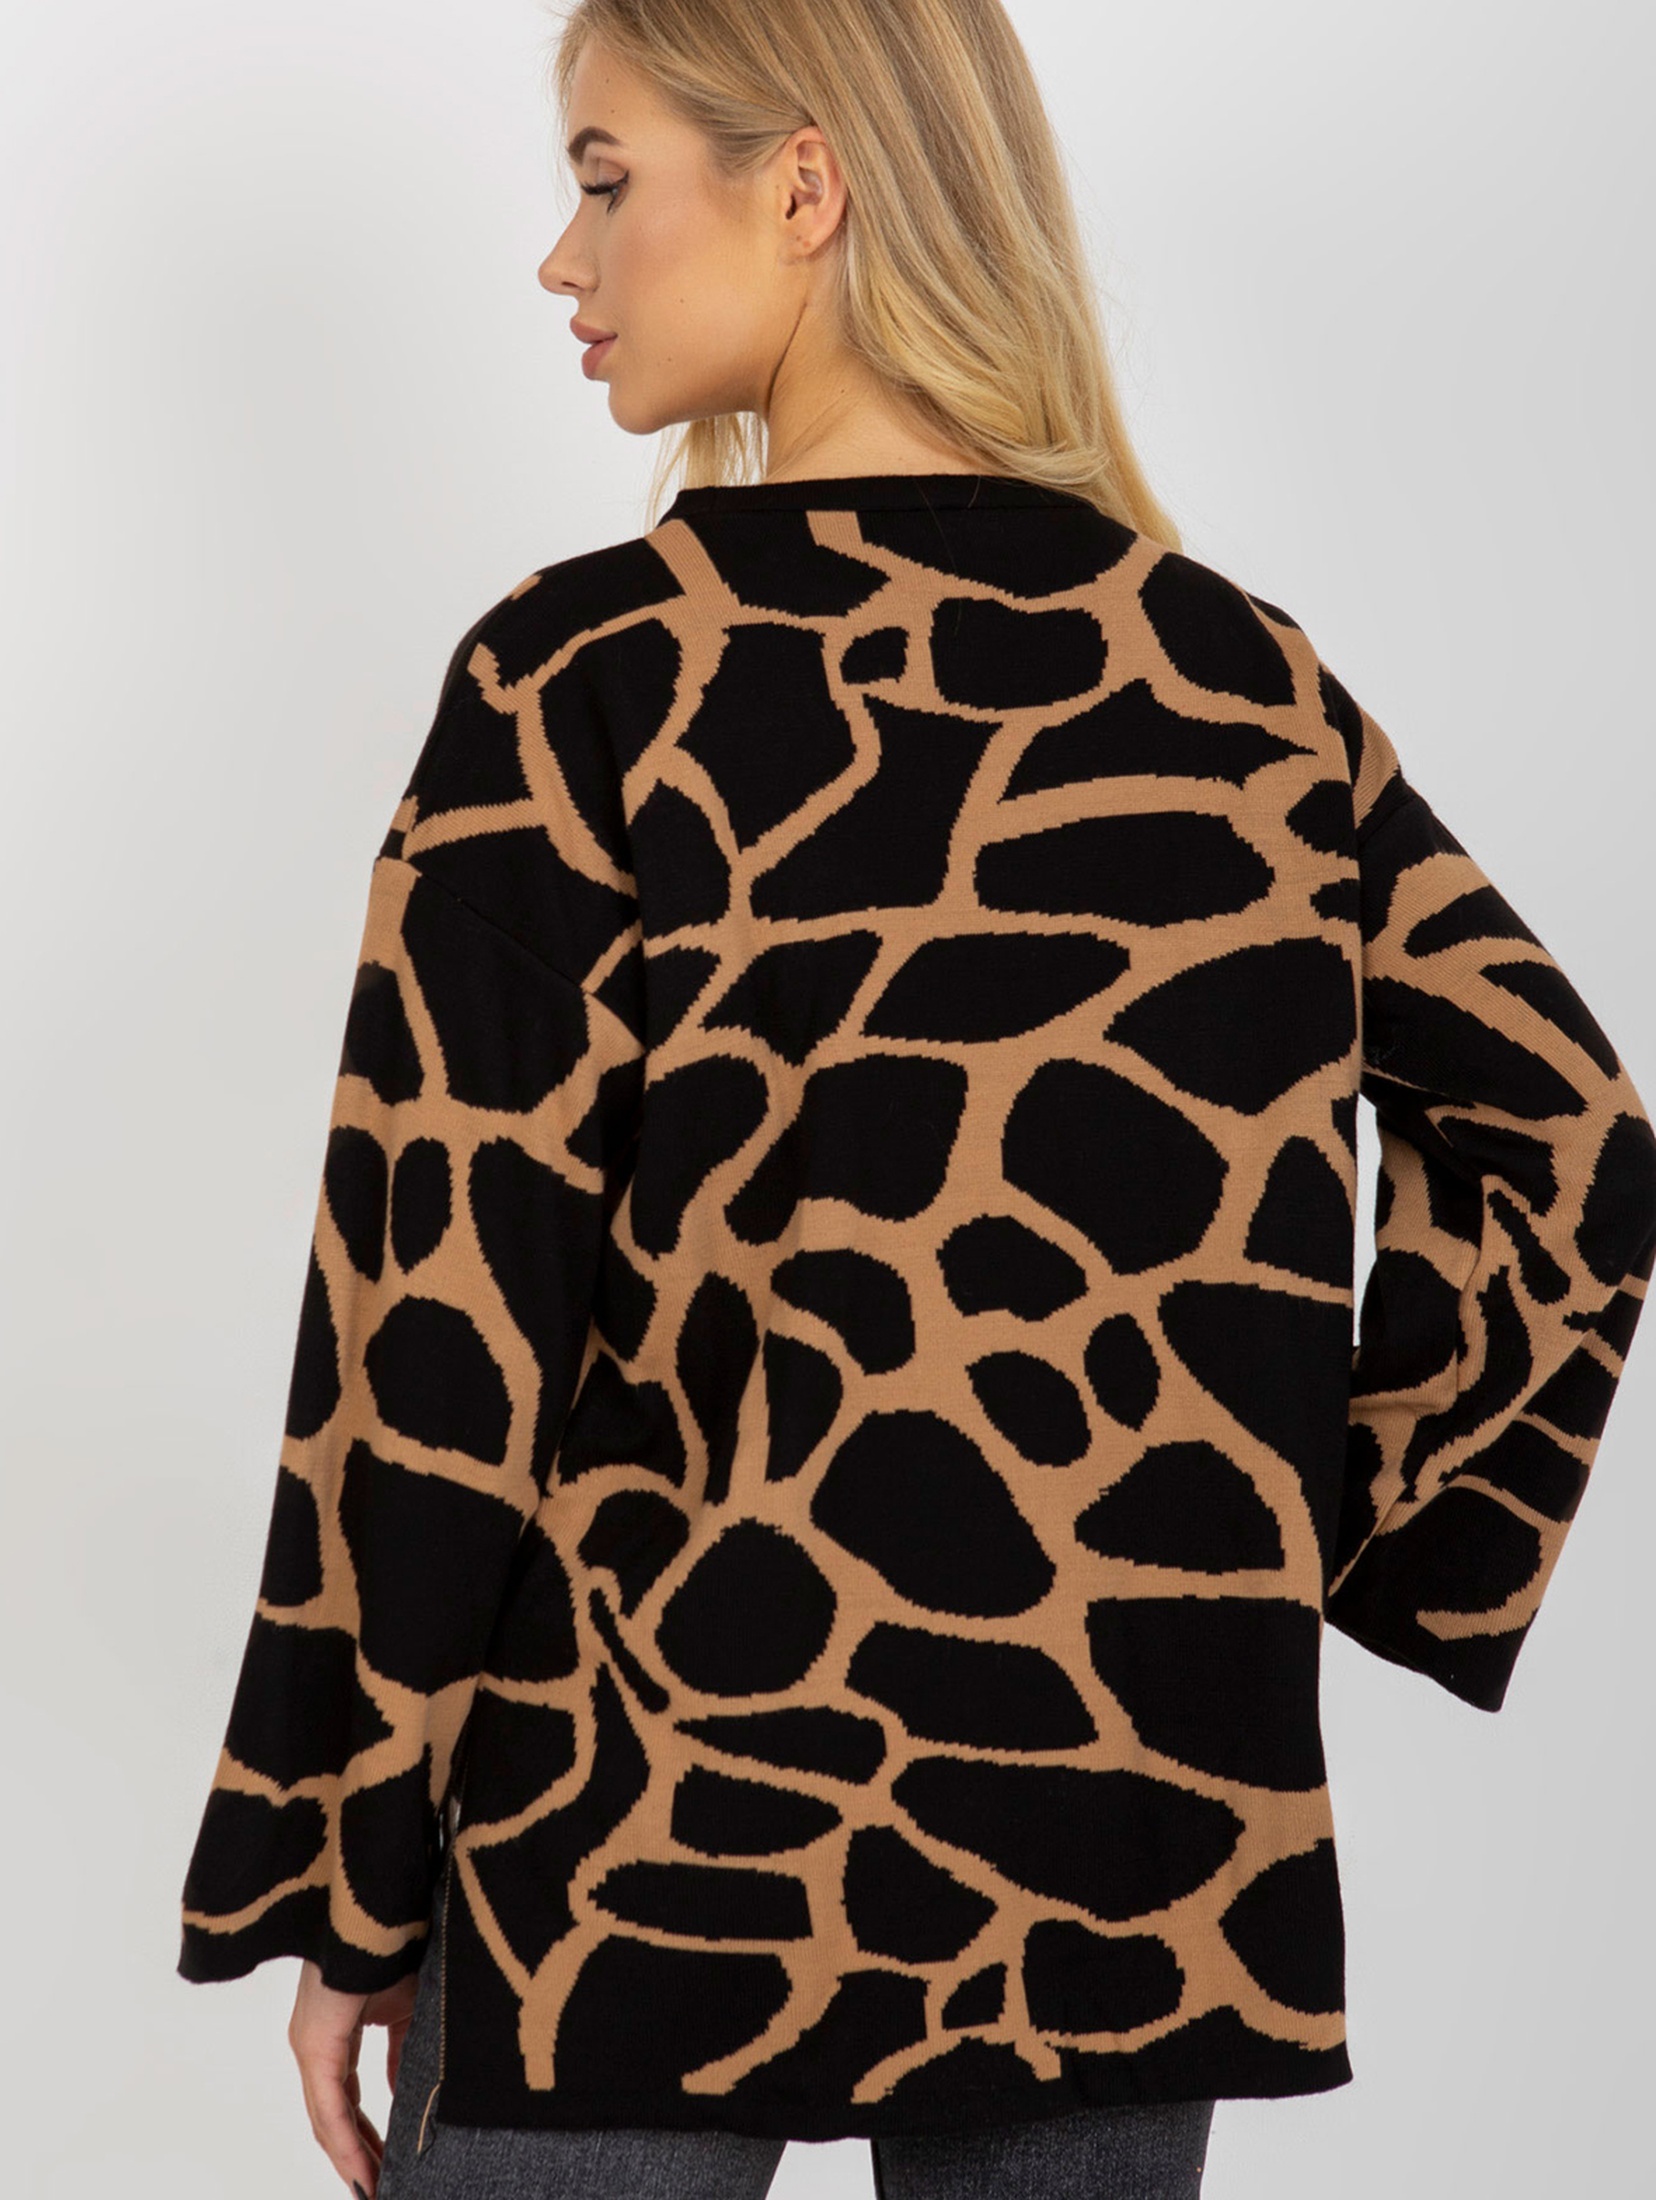 Camelowo-czarny damski sweter oversize we wzory